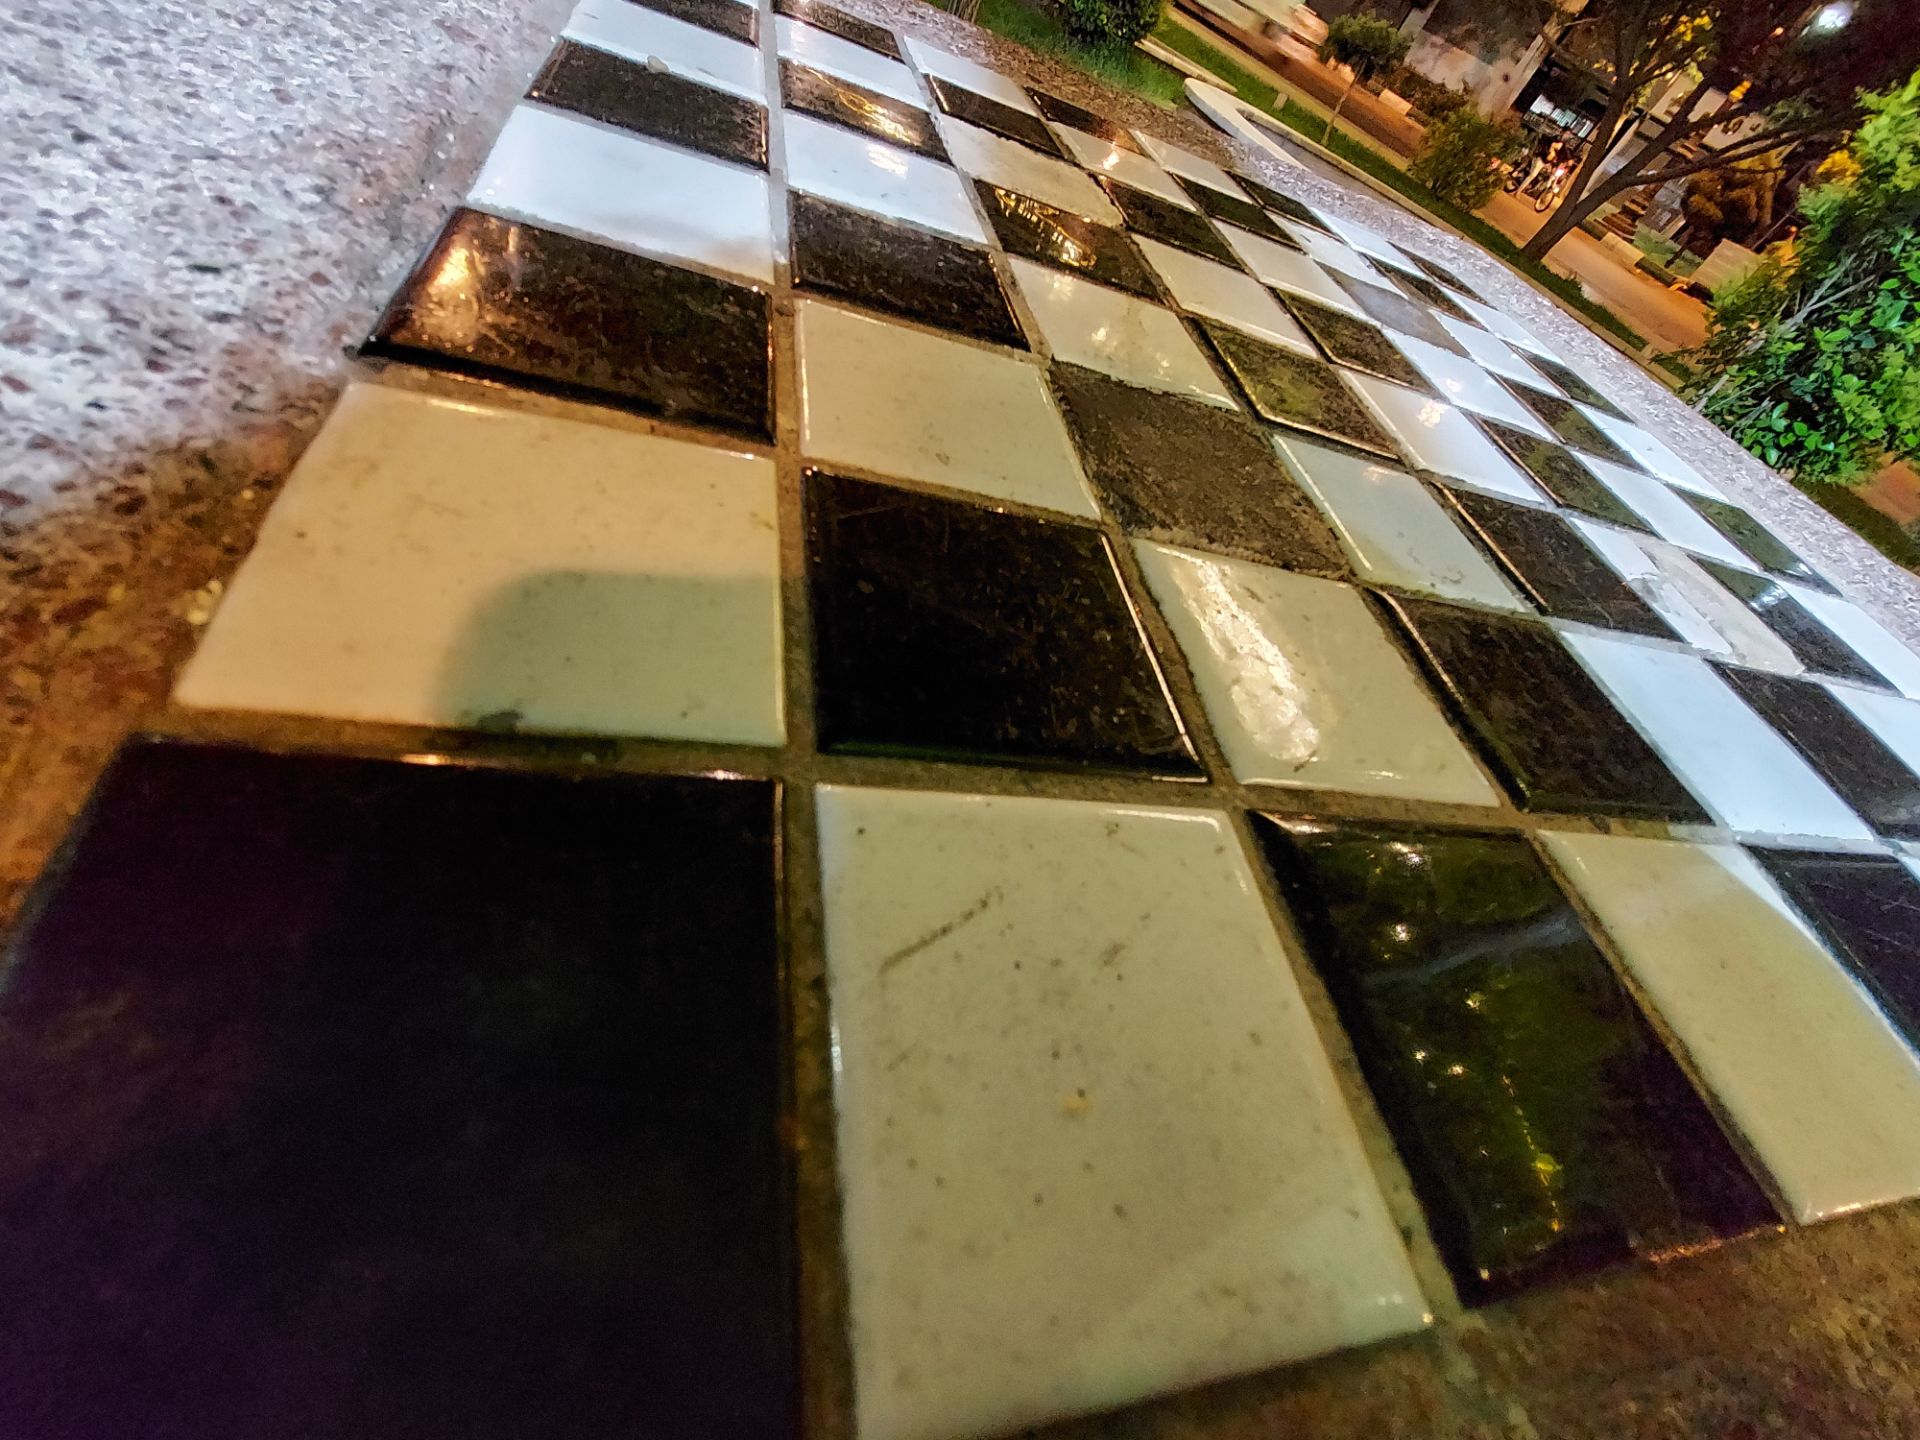 مرجع متخصصين ايران عكس نمونه دوربين اولتراوايد گلكسي M51 سامسونگ در نور كم - صفحه شطرنج در ميدان هفت حوض